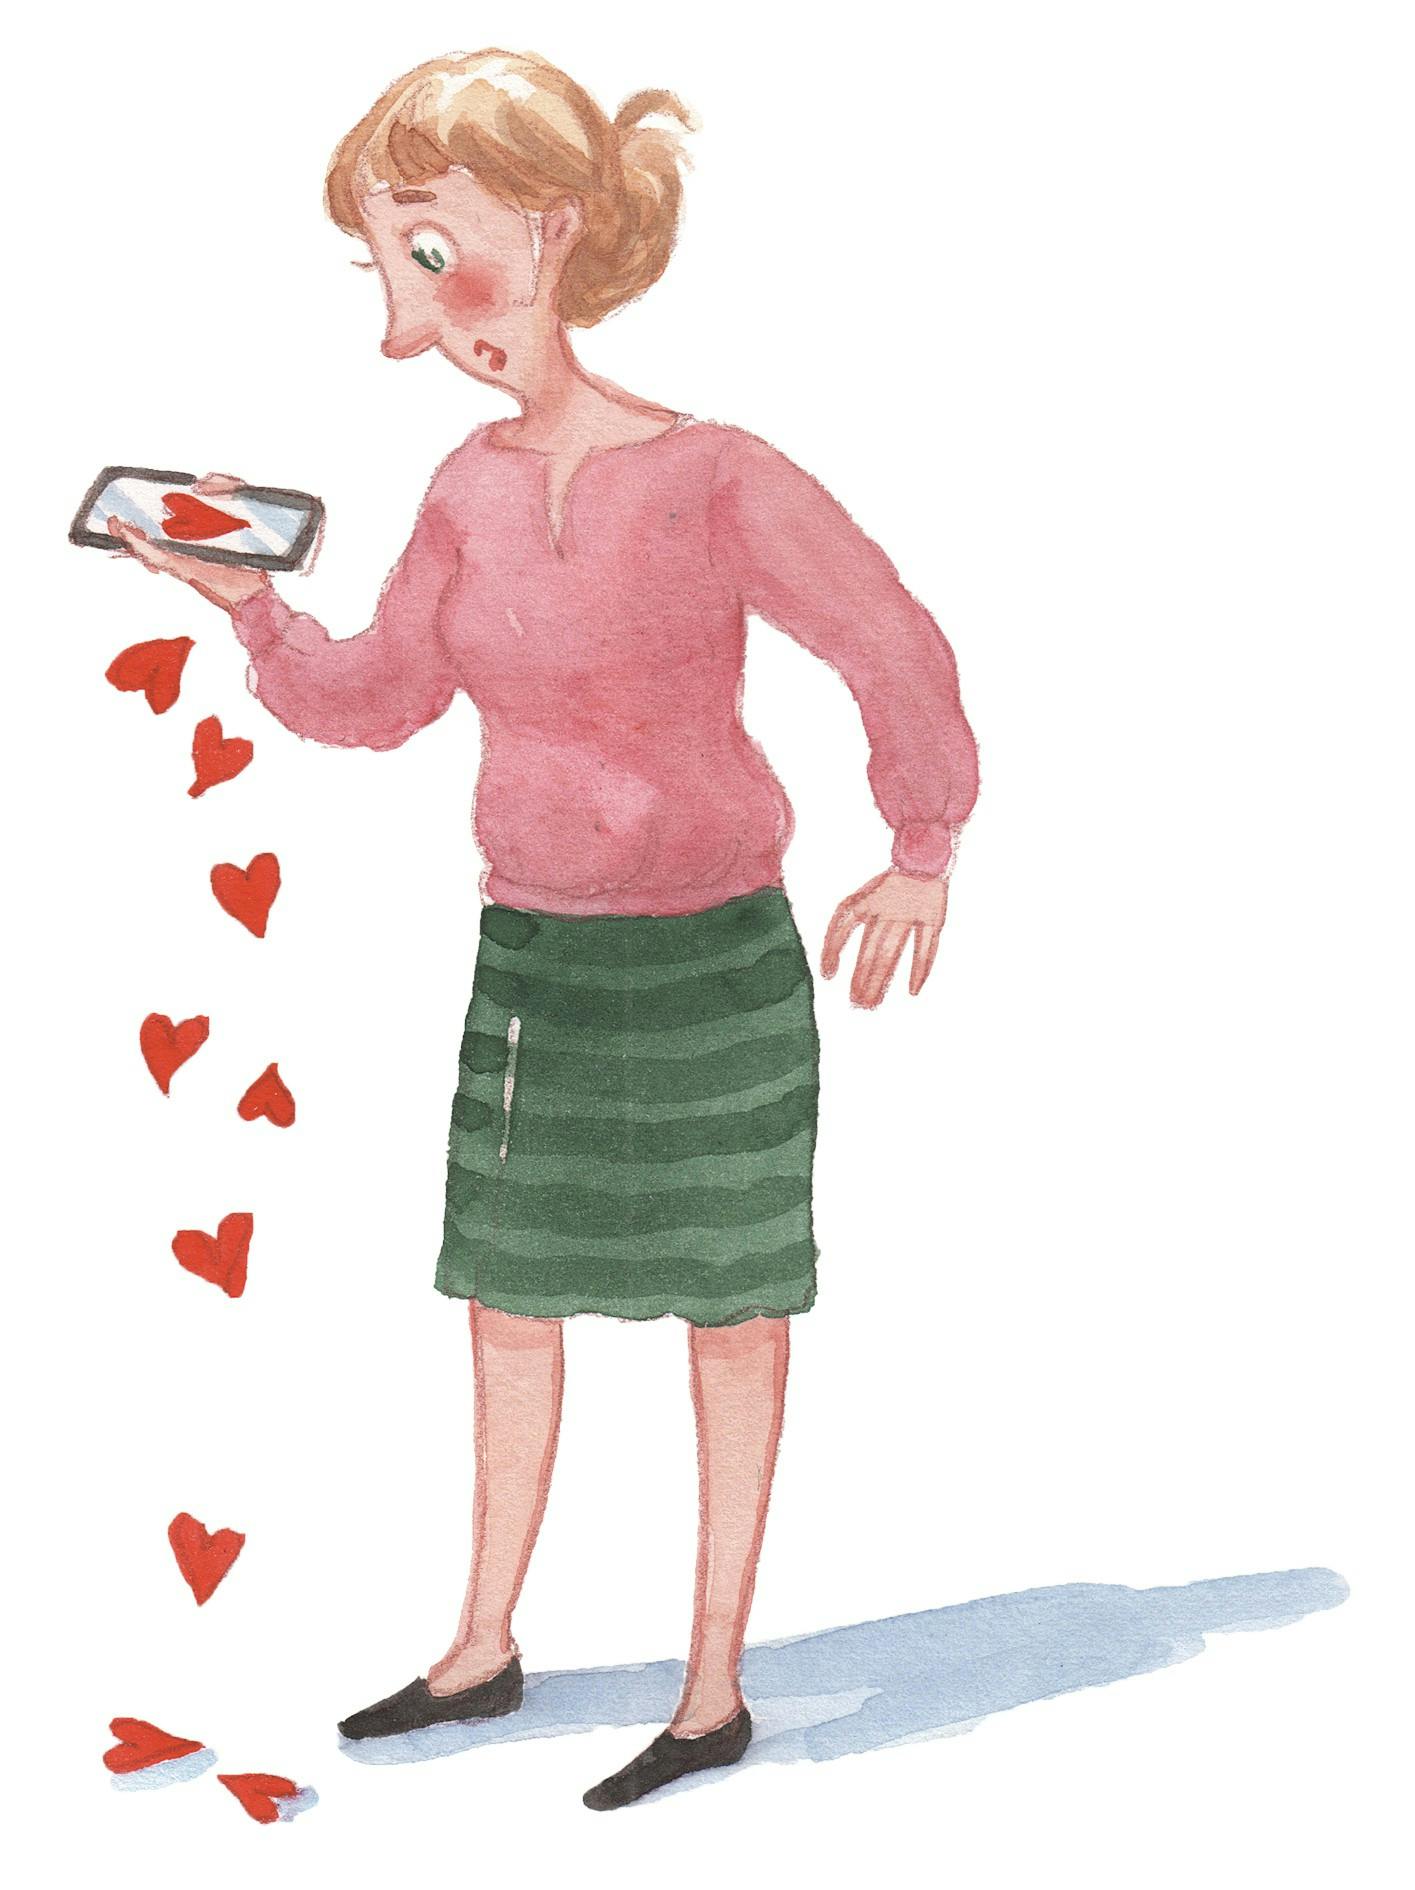 Kvinde står med en telefon i hånden, hvor der falder hjerter ud af telefonen